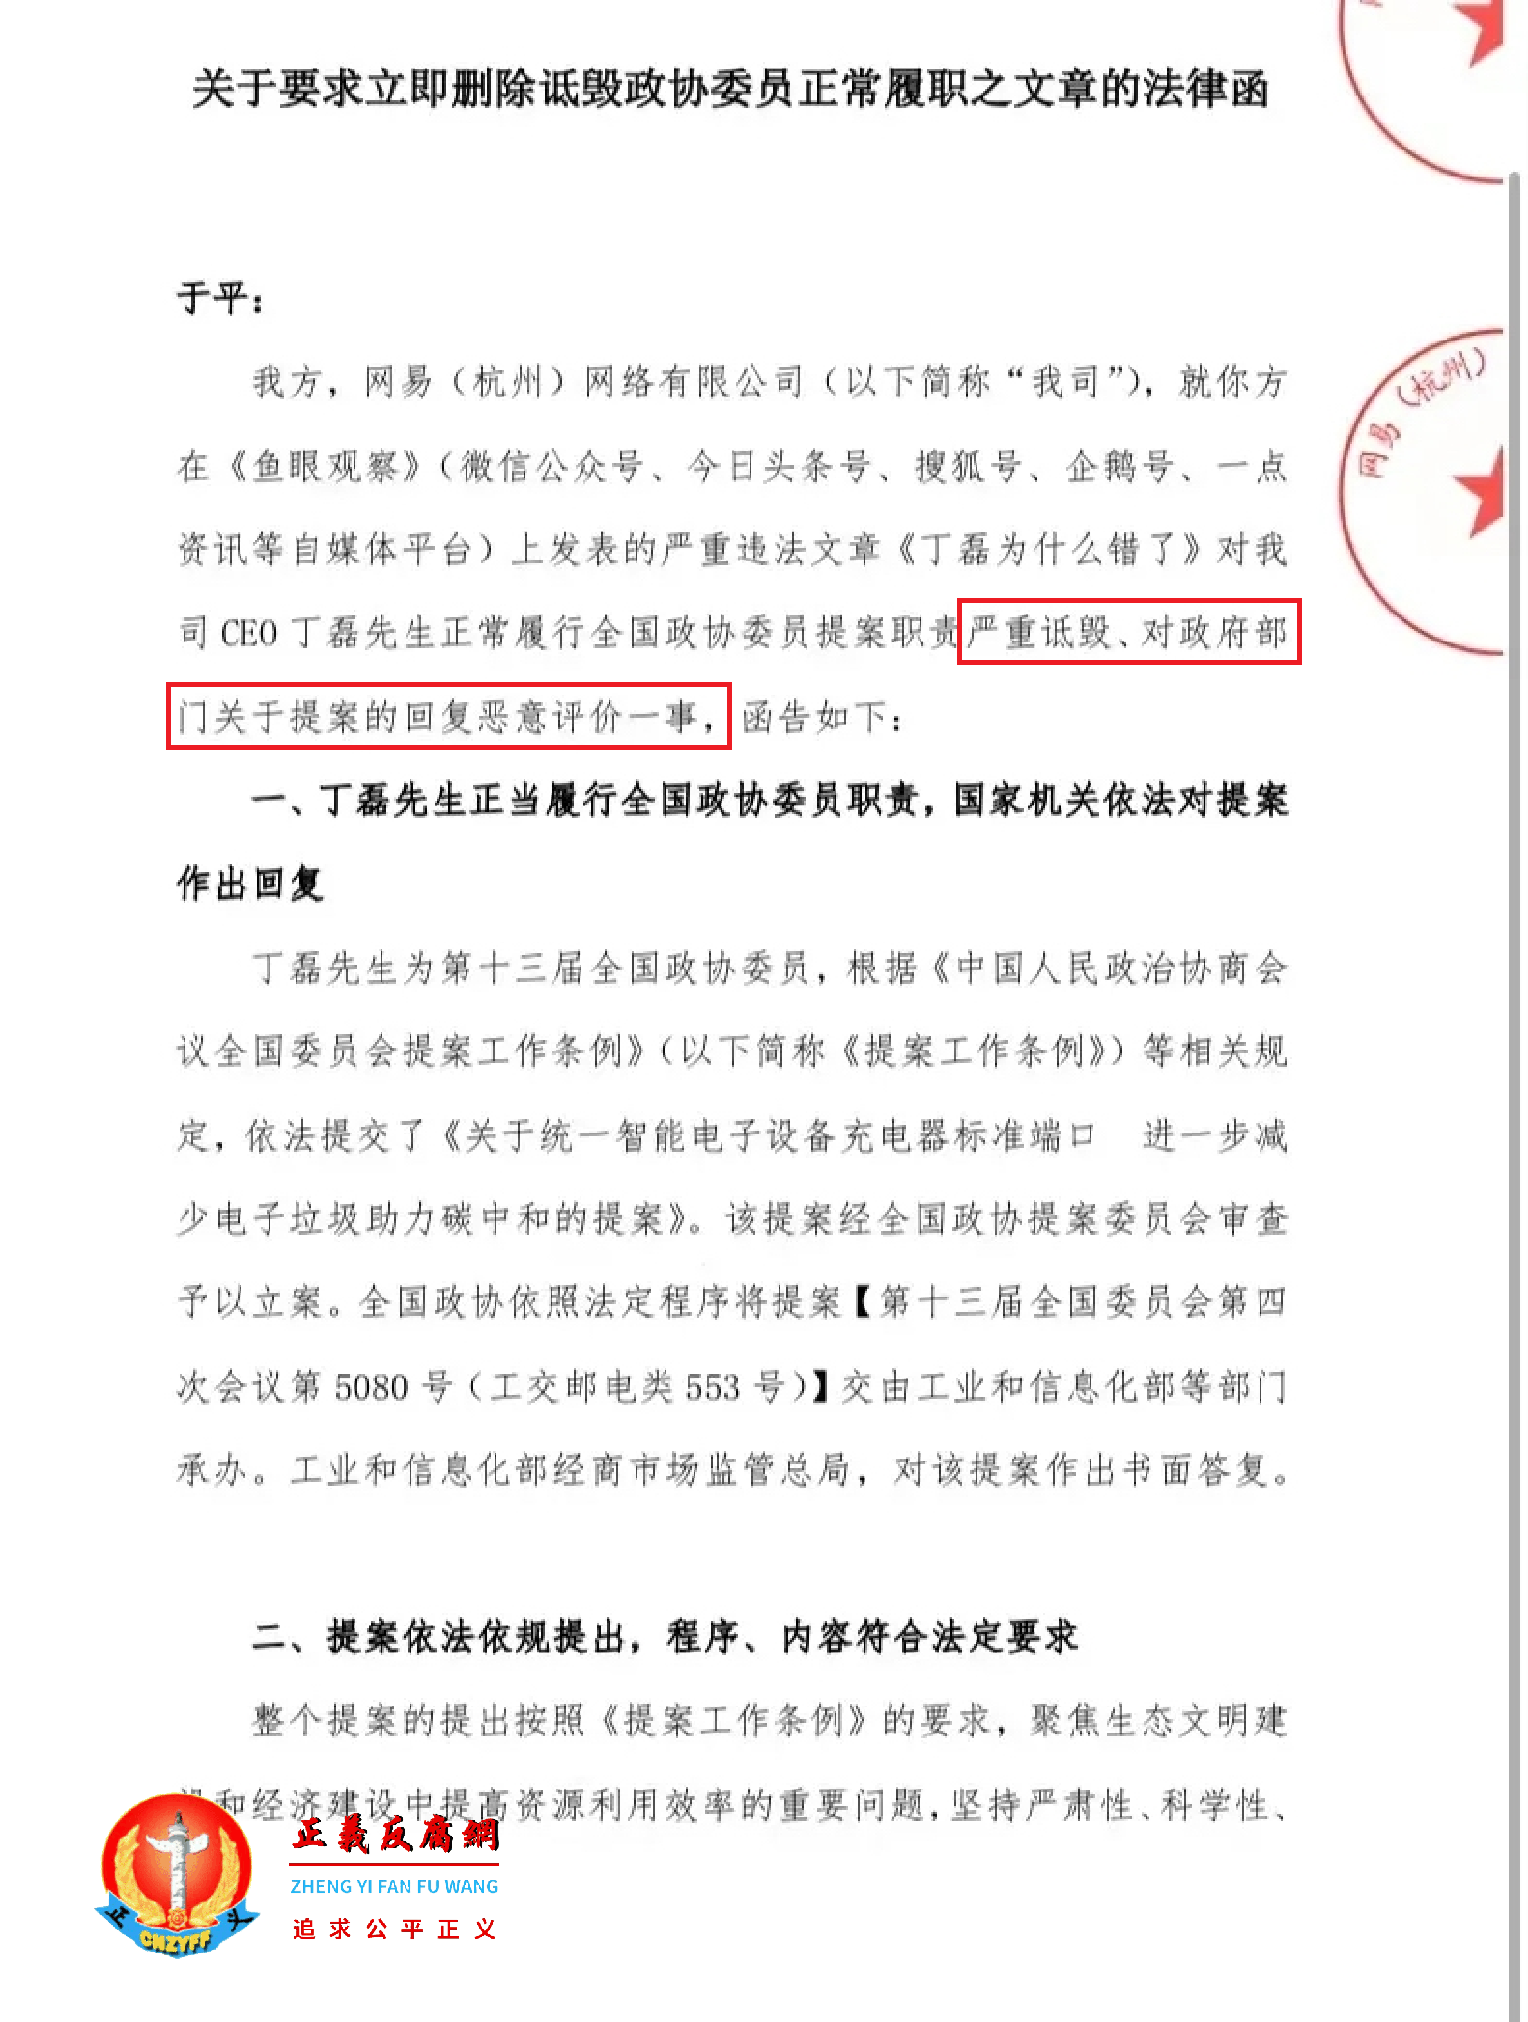 2022年1月13日，网易(杭州)网络有限公司发了一份《关于要求立即删除诋毁政协委员正常履职之文章的法律函》.png